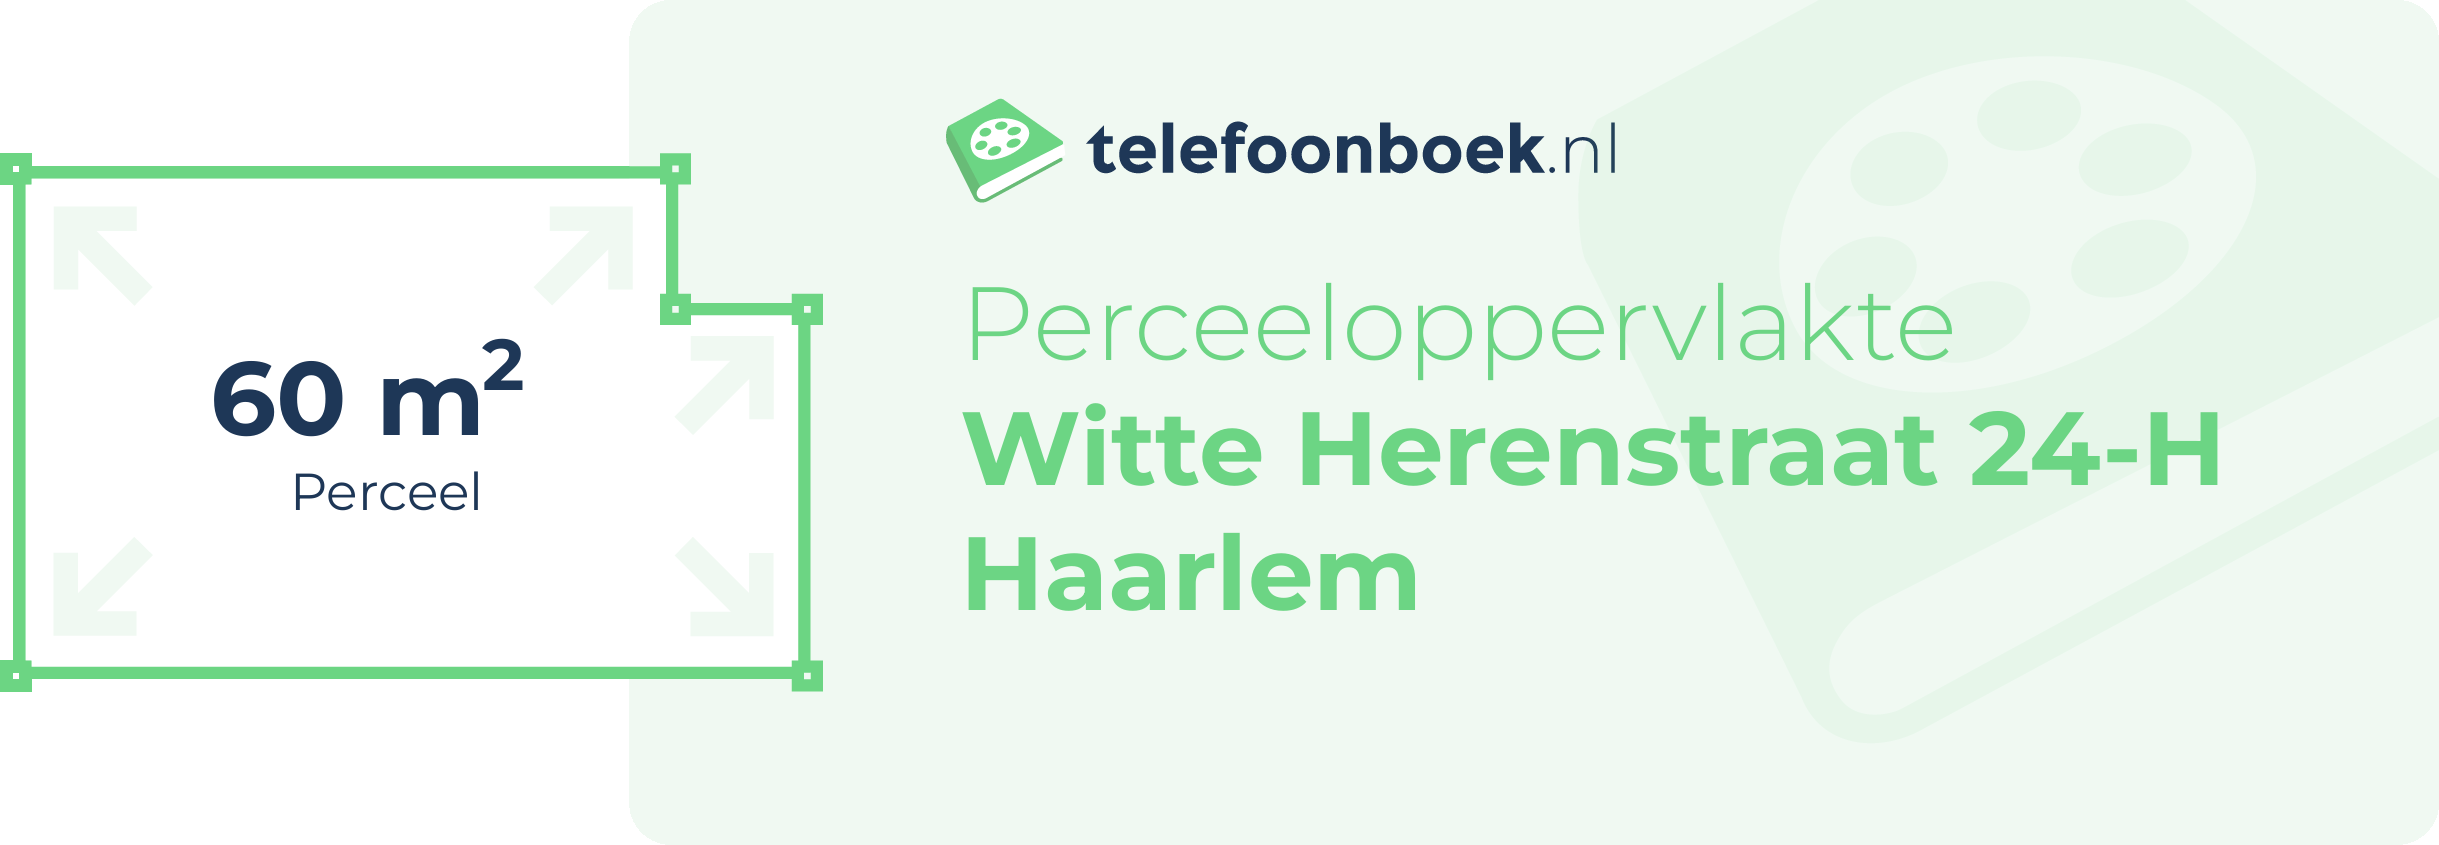 Perceeloppervlakte Witte Herenstraat 24-H Haarlem